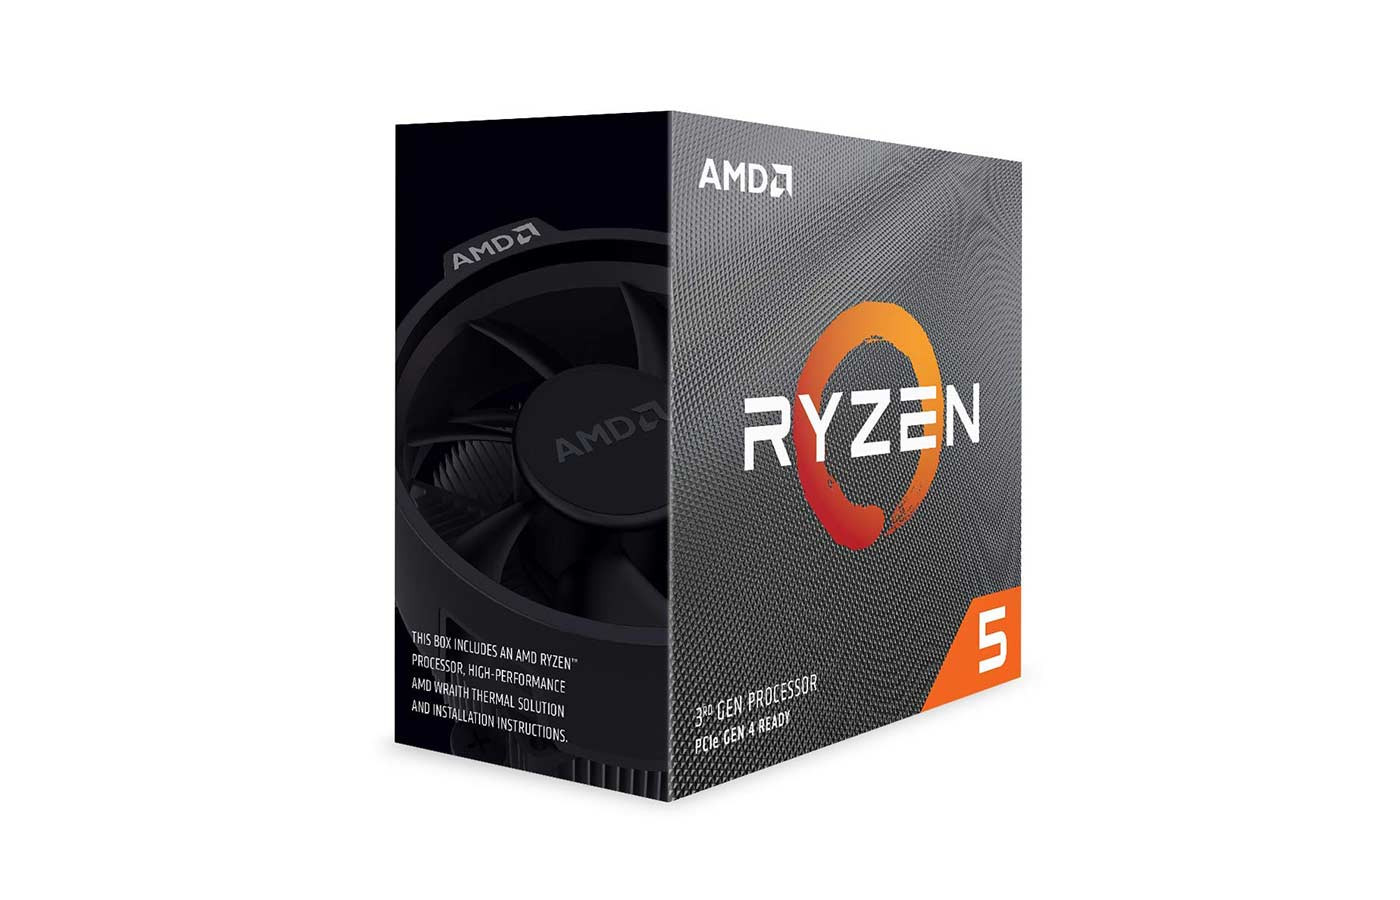 AMD Ryzen 5 3600 (6C/12T) Unlocked Desktop